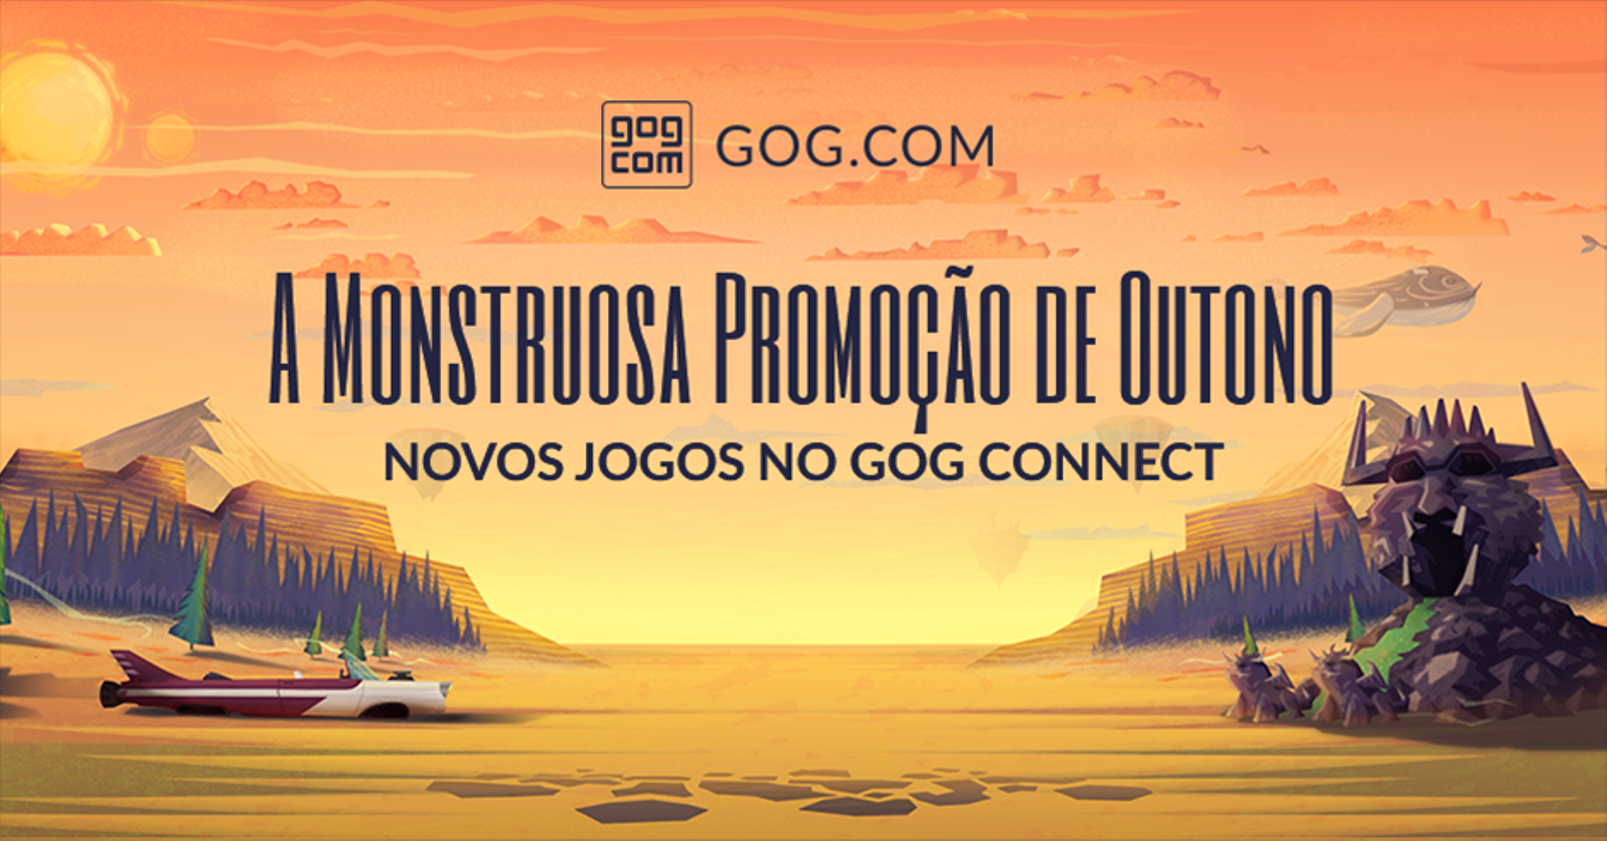 A Monstruosa Promoção de Outono do GOG já começou trazendo títulos com 90% de desconto e jogos gratuitos.